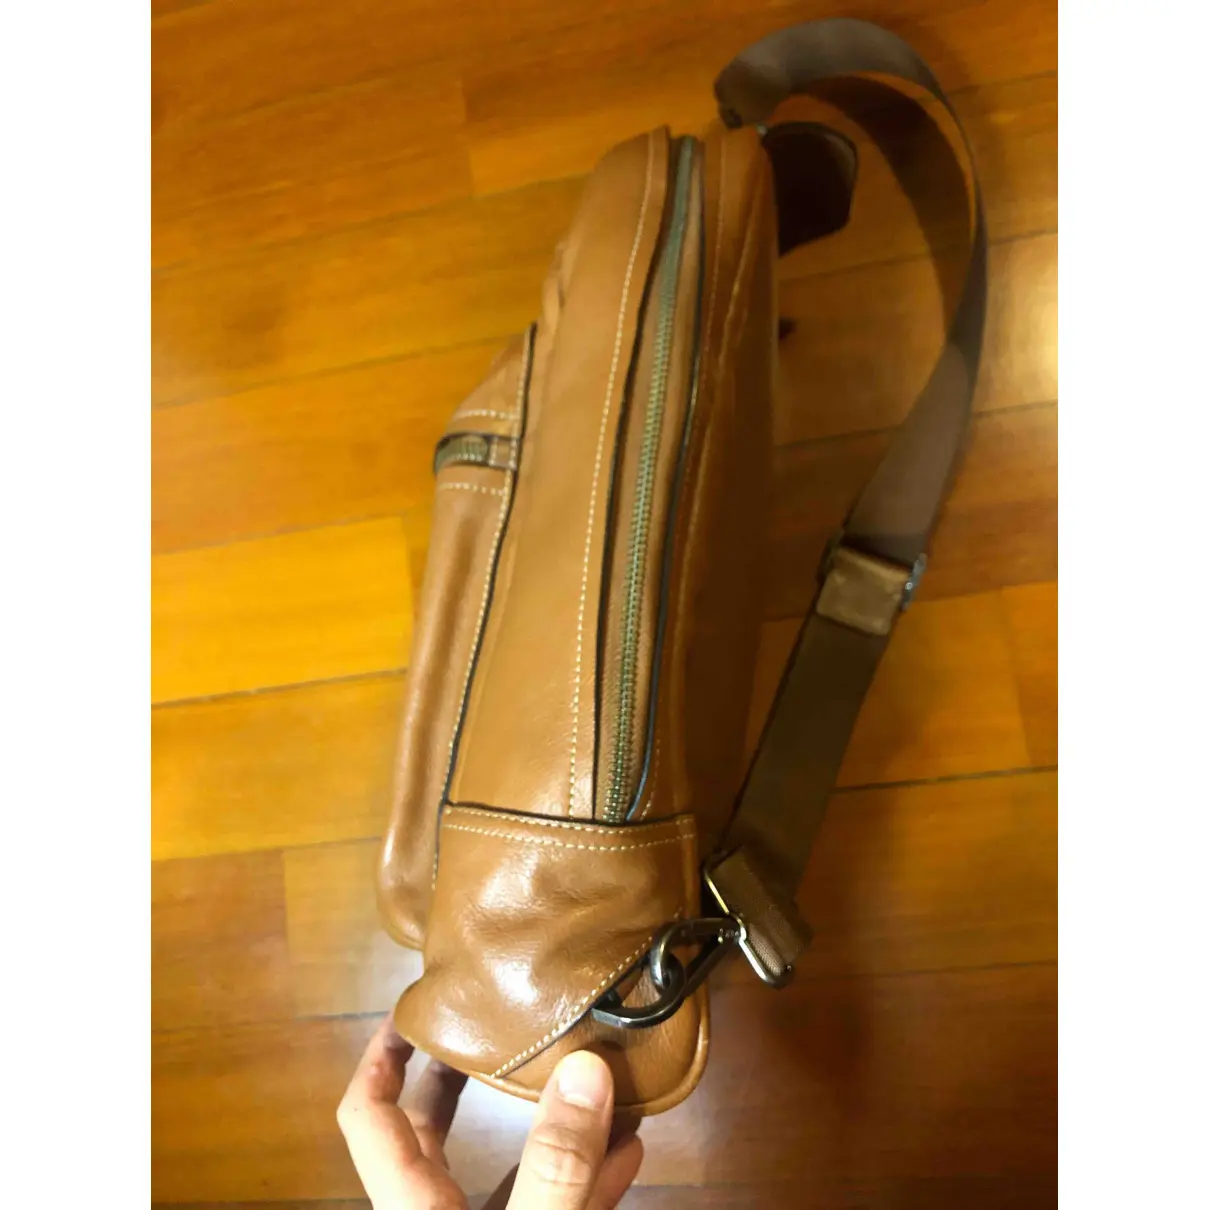 Buy Tumi Leather satchel online